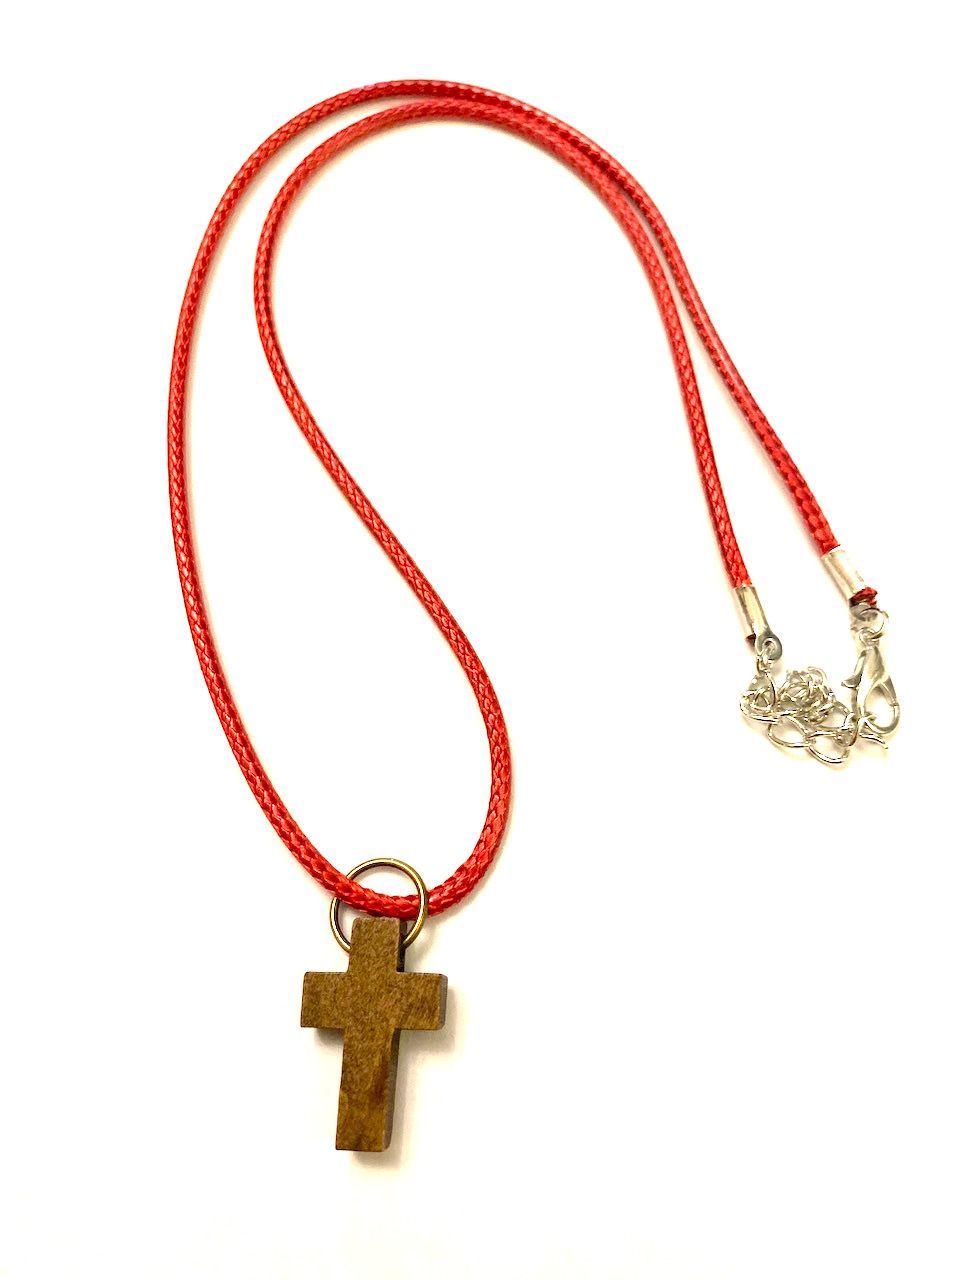 Кулон "Крест малый деревянный", размер 22*15 мм,  цвет "темный шоколад" на тканевом шнурочке 45+5 см бордового цвета